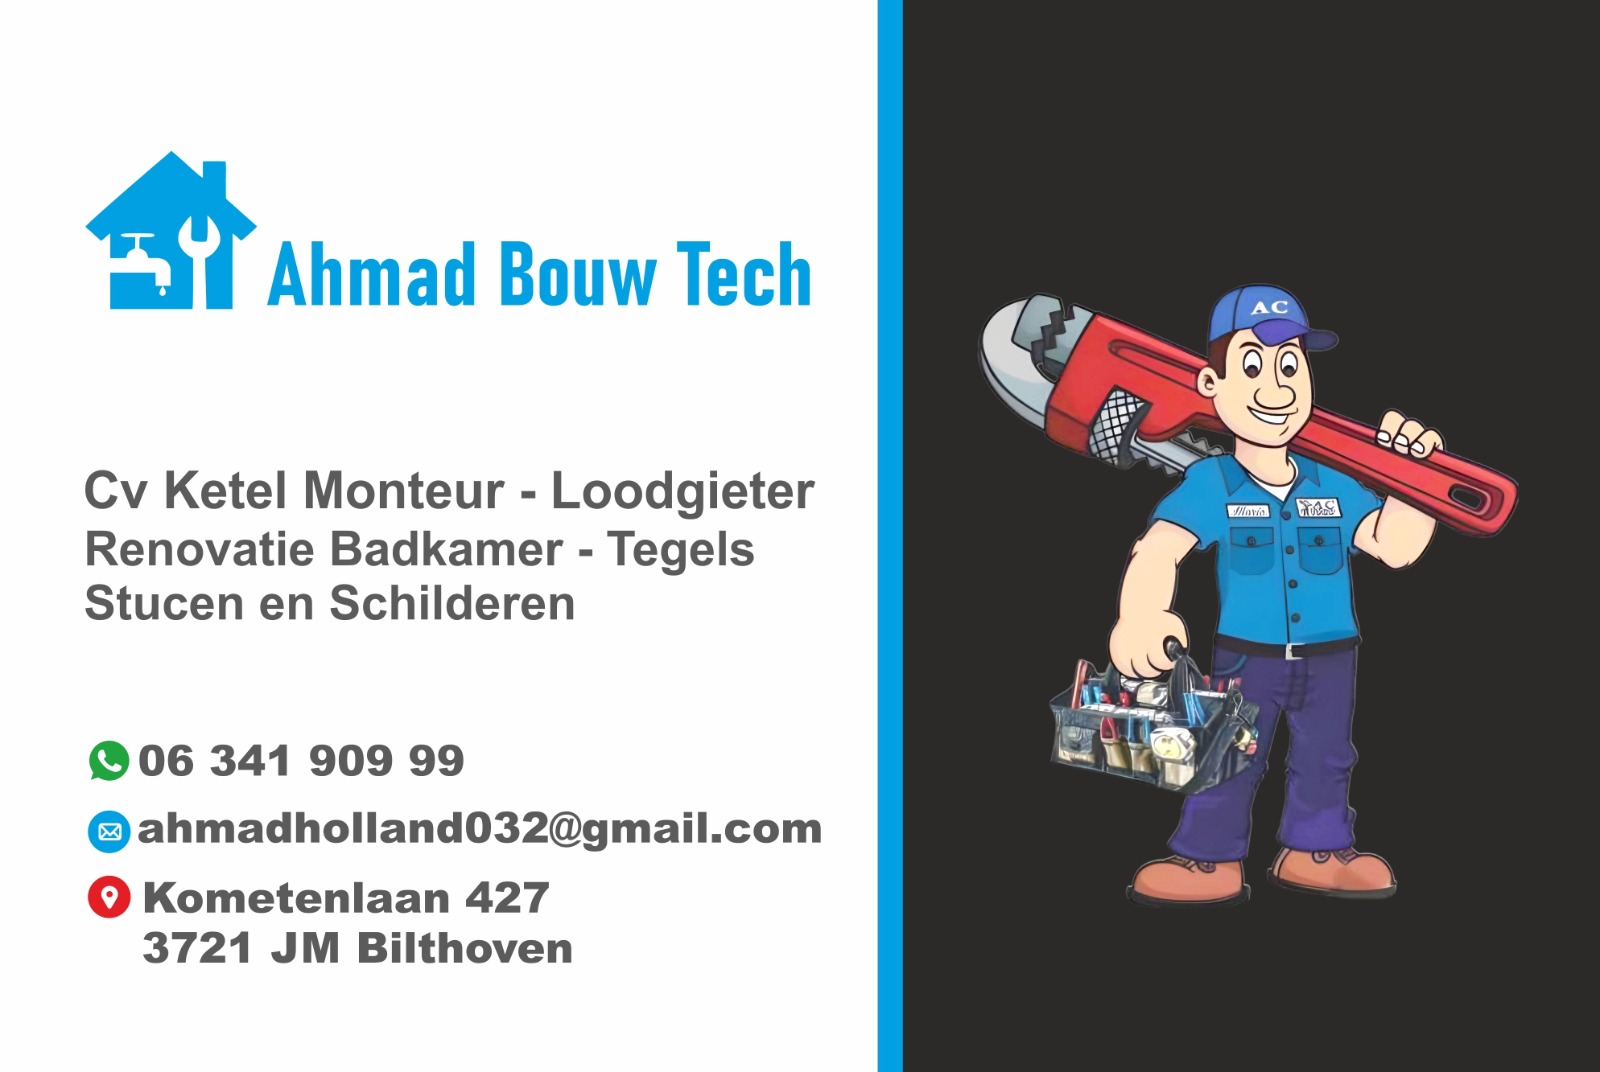 Ahmad bouw tech logo